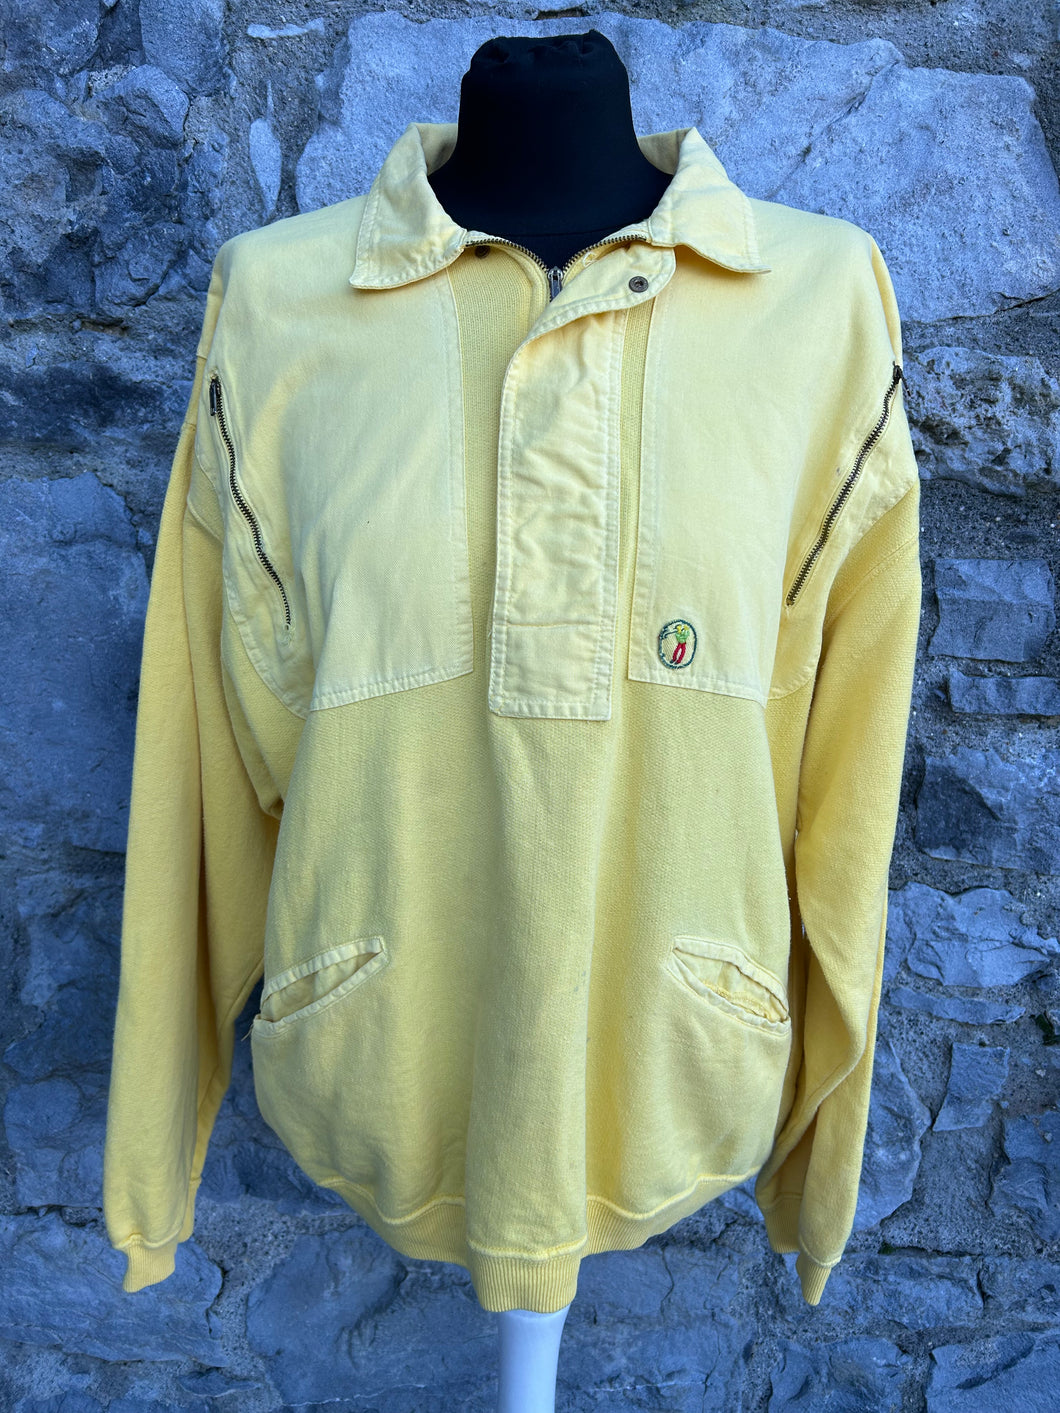 80s yellow sweatshirt S/M